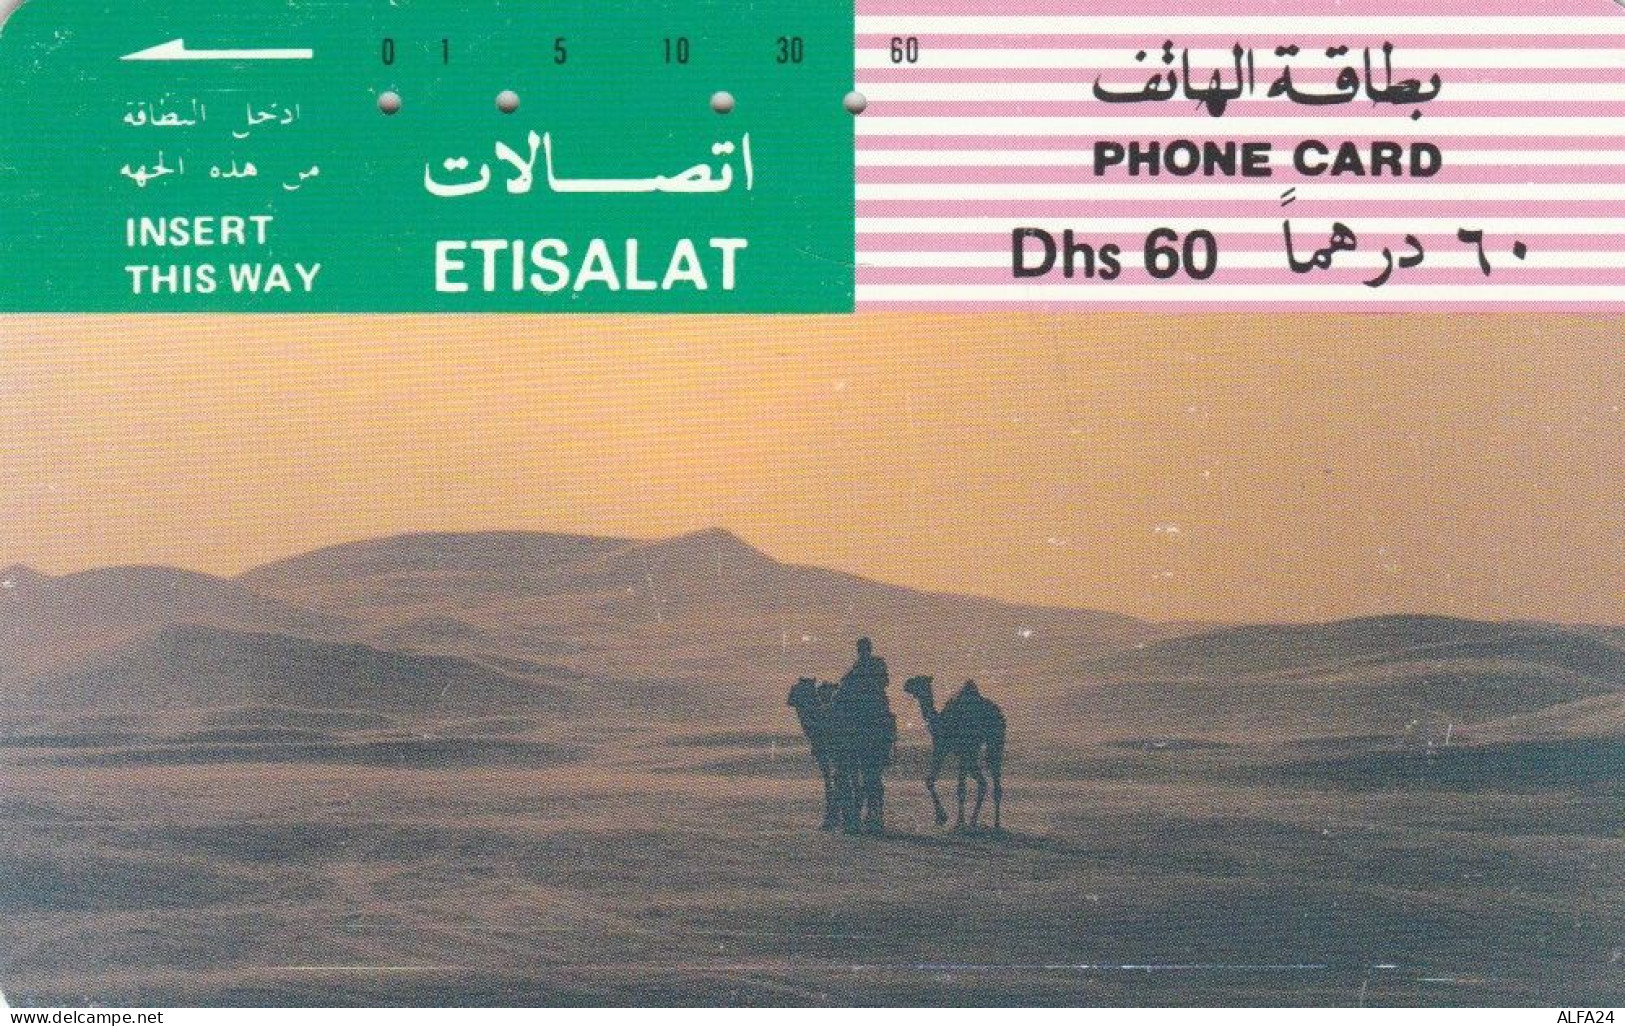 PHONE CARD EMIRATI ARABI  (E94.10.4 - Ver. Arab. Emirate